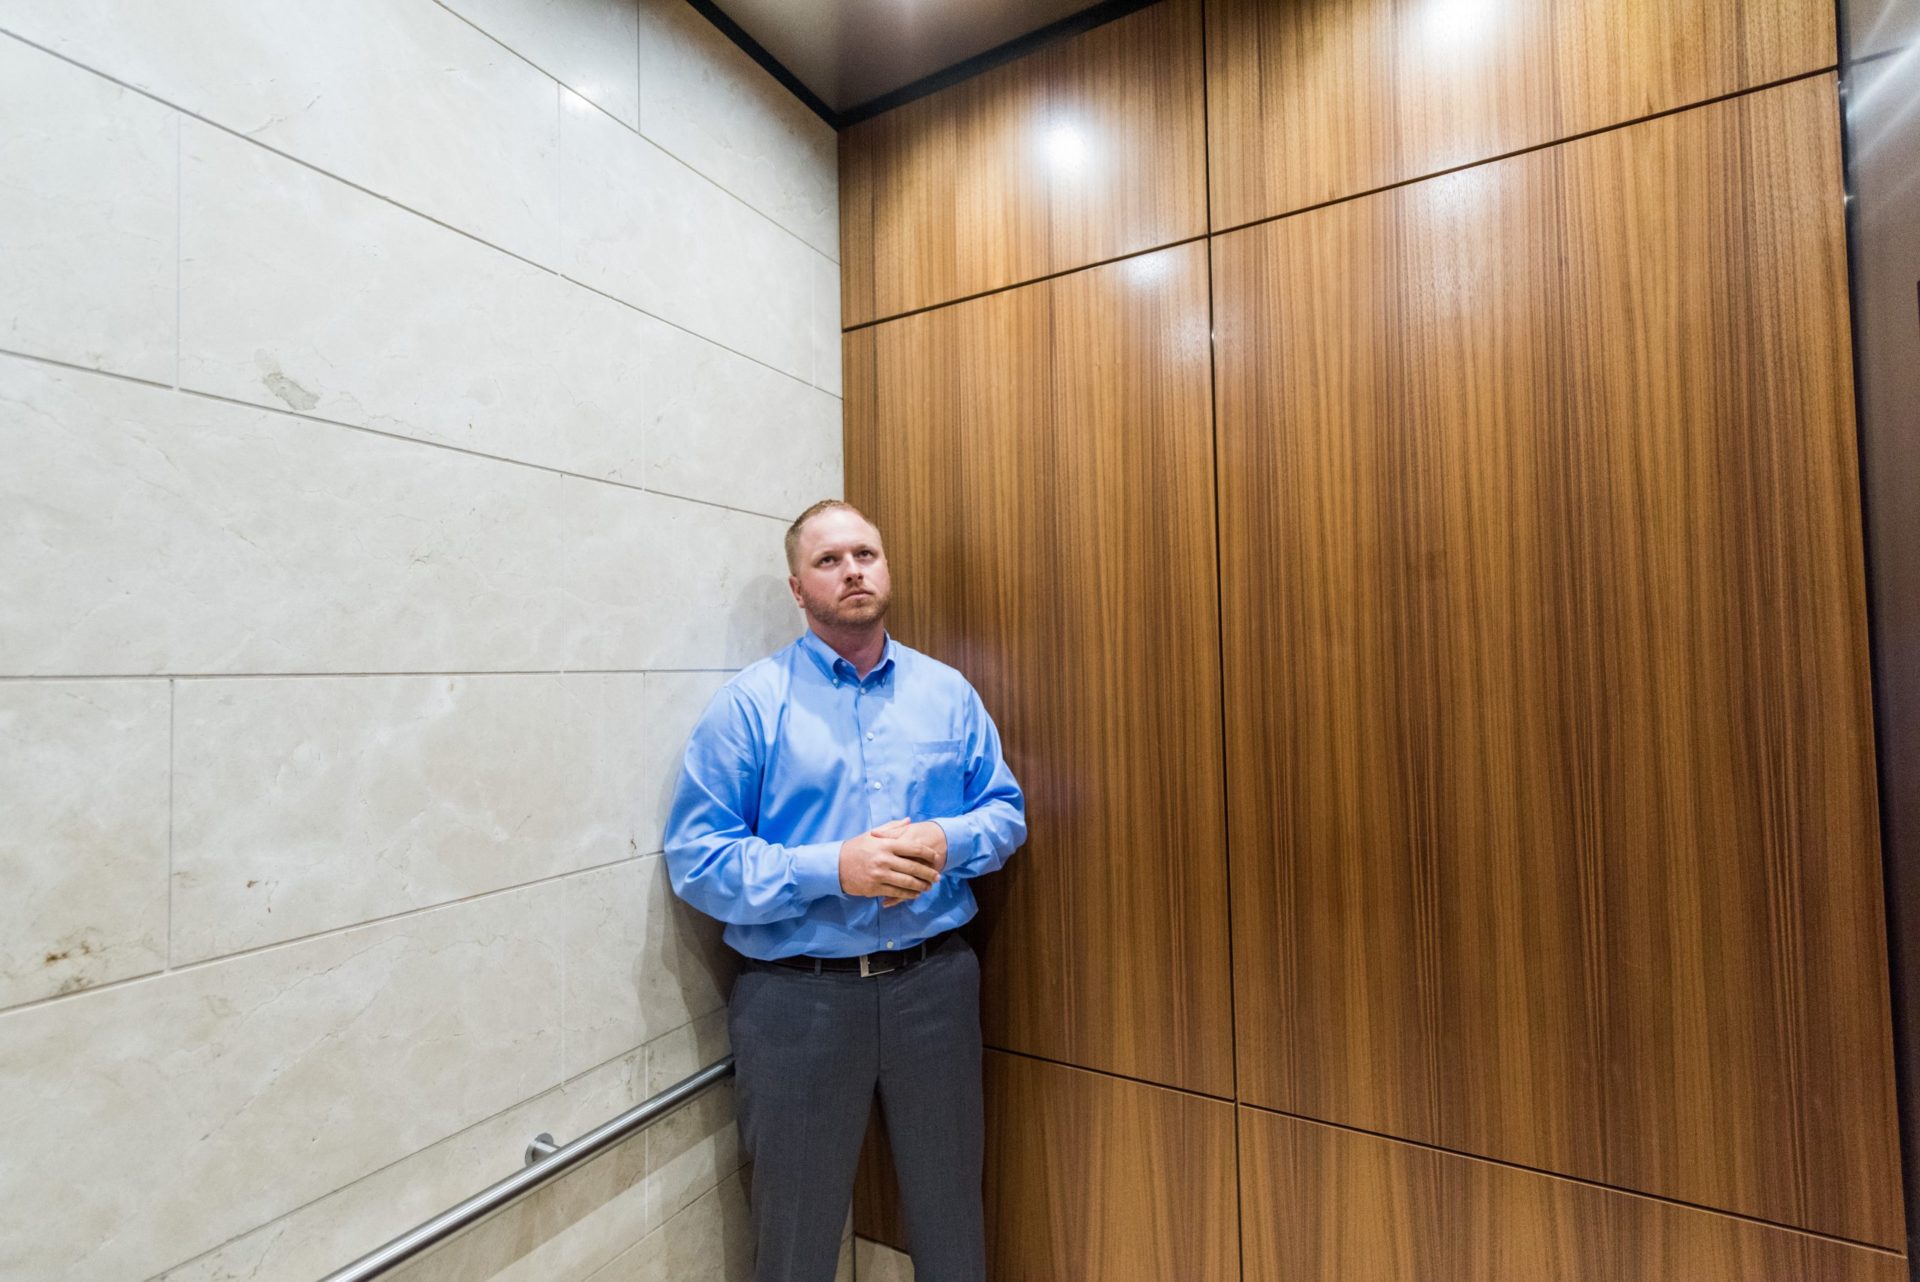 Elevator Safety Concerns